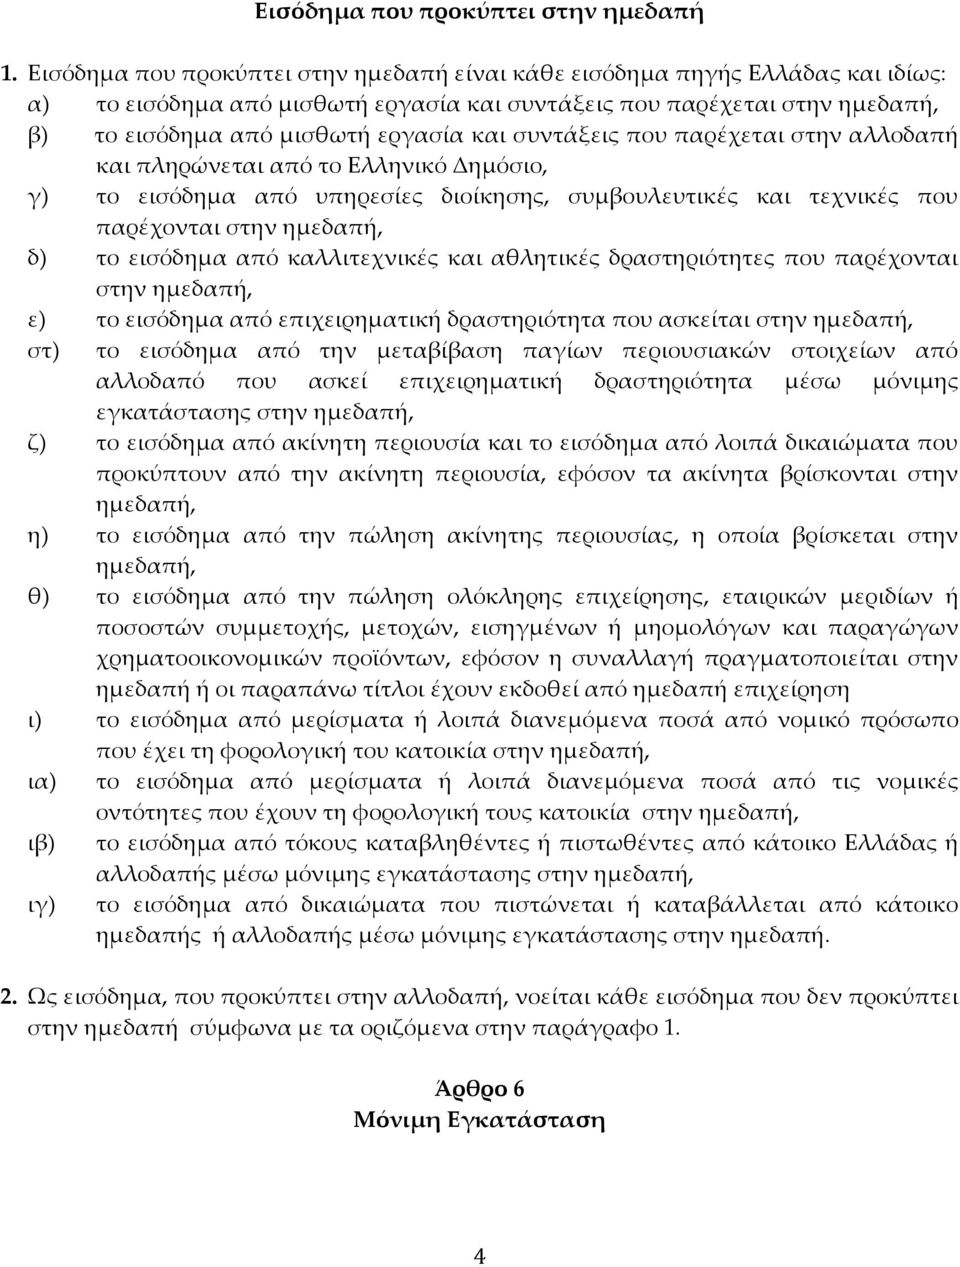 συντάξεις που παρέχεται στην αλλοδαπή και πληρώνεται από το Ελληνικό Δημόσιο, γ) το εισόδημα από υπηρεσίες διοίκησης, συμβουλευτικές και τεχνικές που παρέχονται στην ημεδαπή, δ) το εισόδημα από